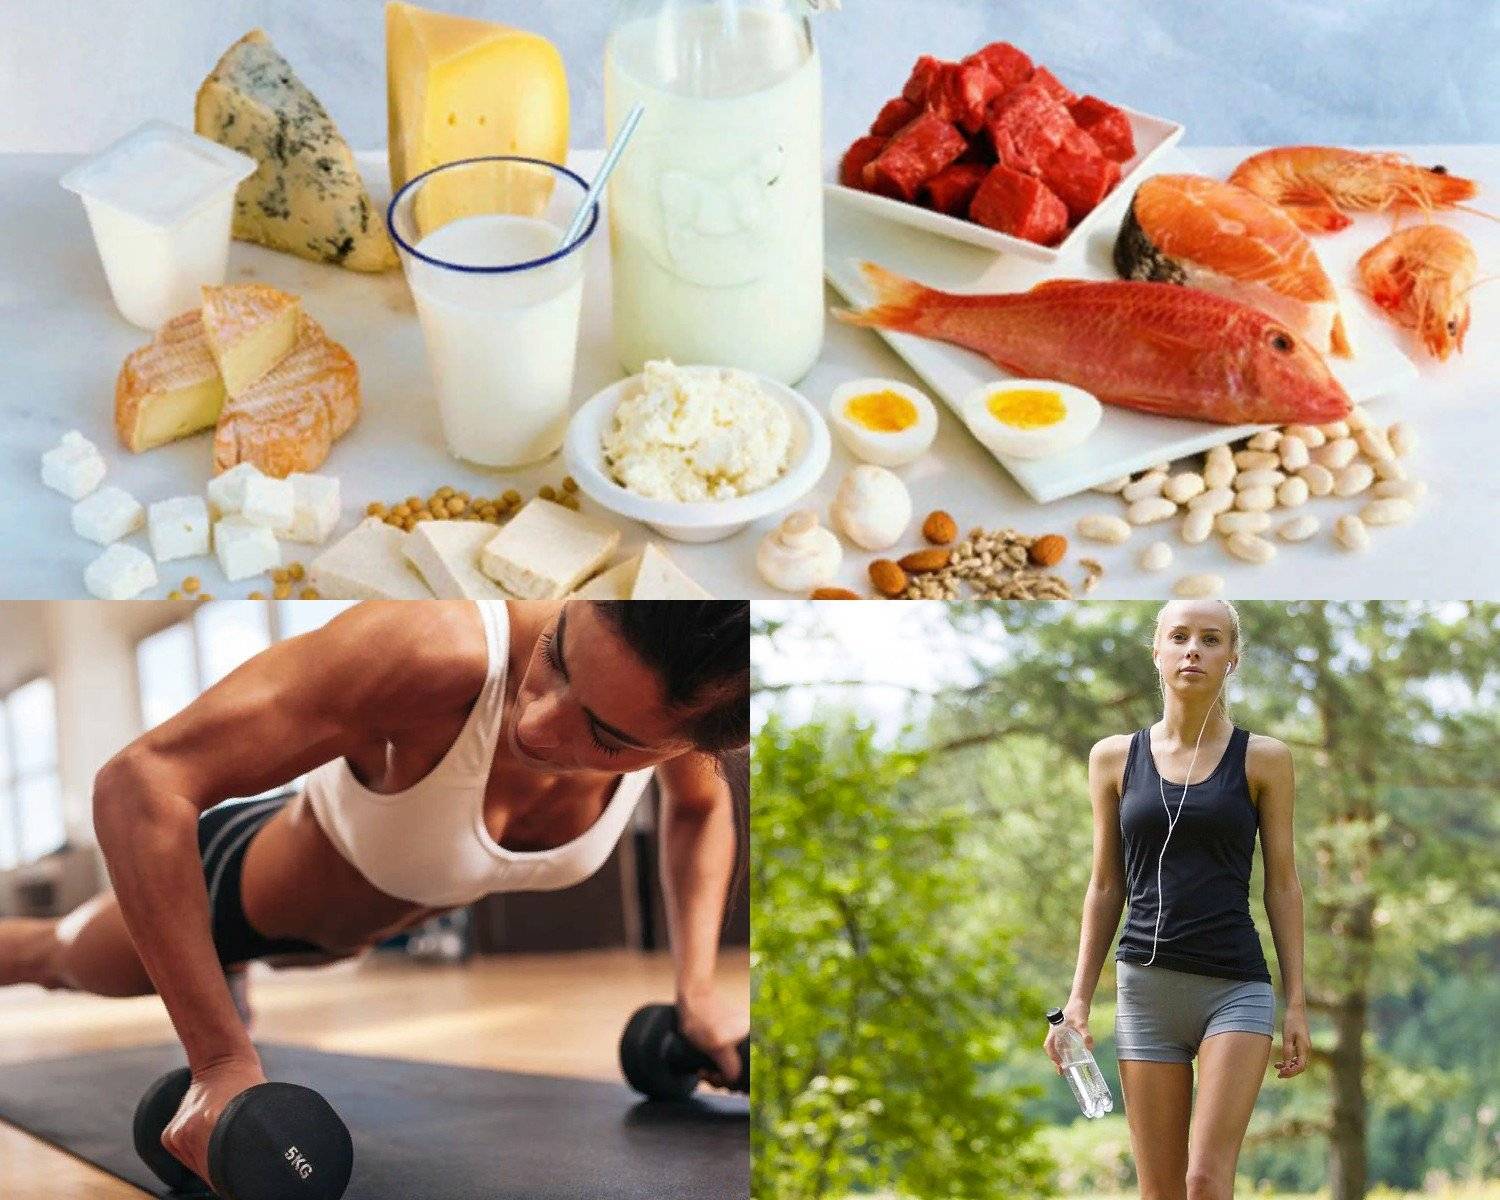 Правильное питание для похудения в домашних условиях: меню на неделю, список продуктов, основа, суть и блюда с рецептами для рациона